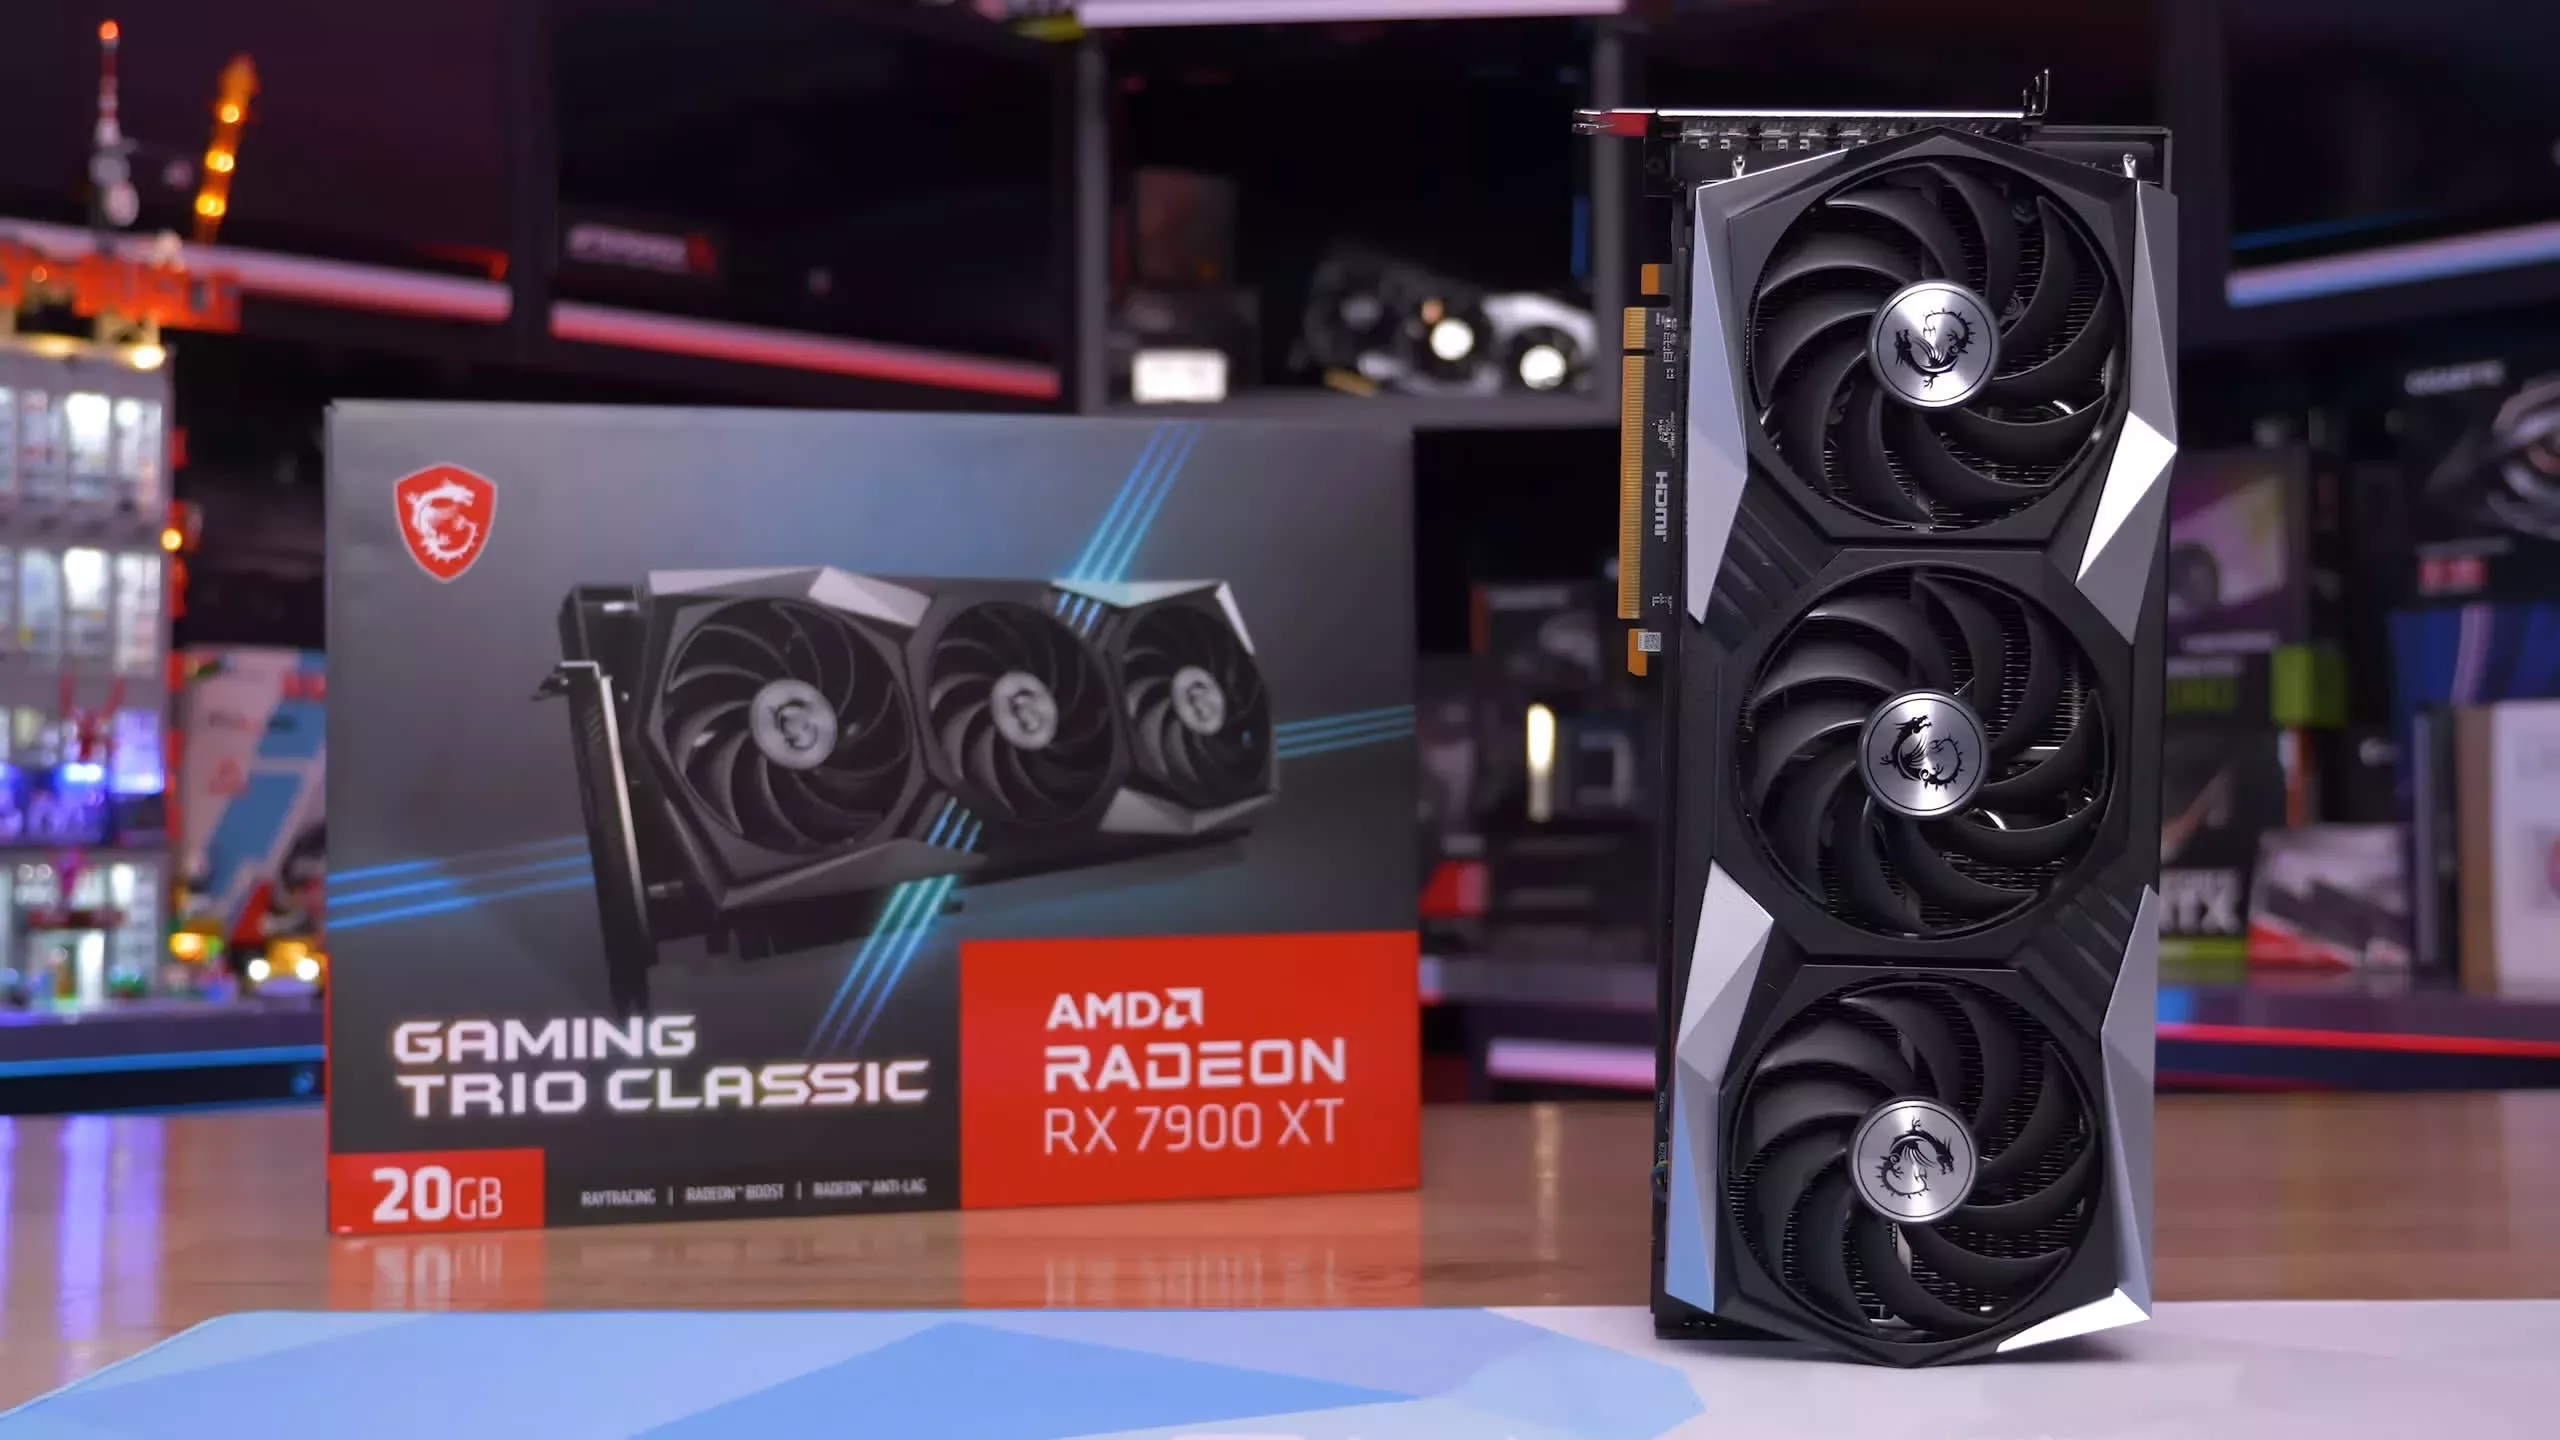 Reseñas, ventajas y desventajas de AMD Radeon RX 7900 XT